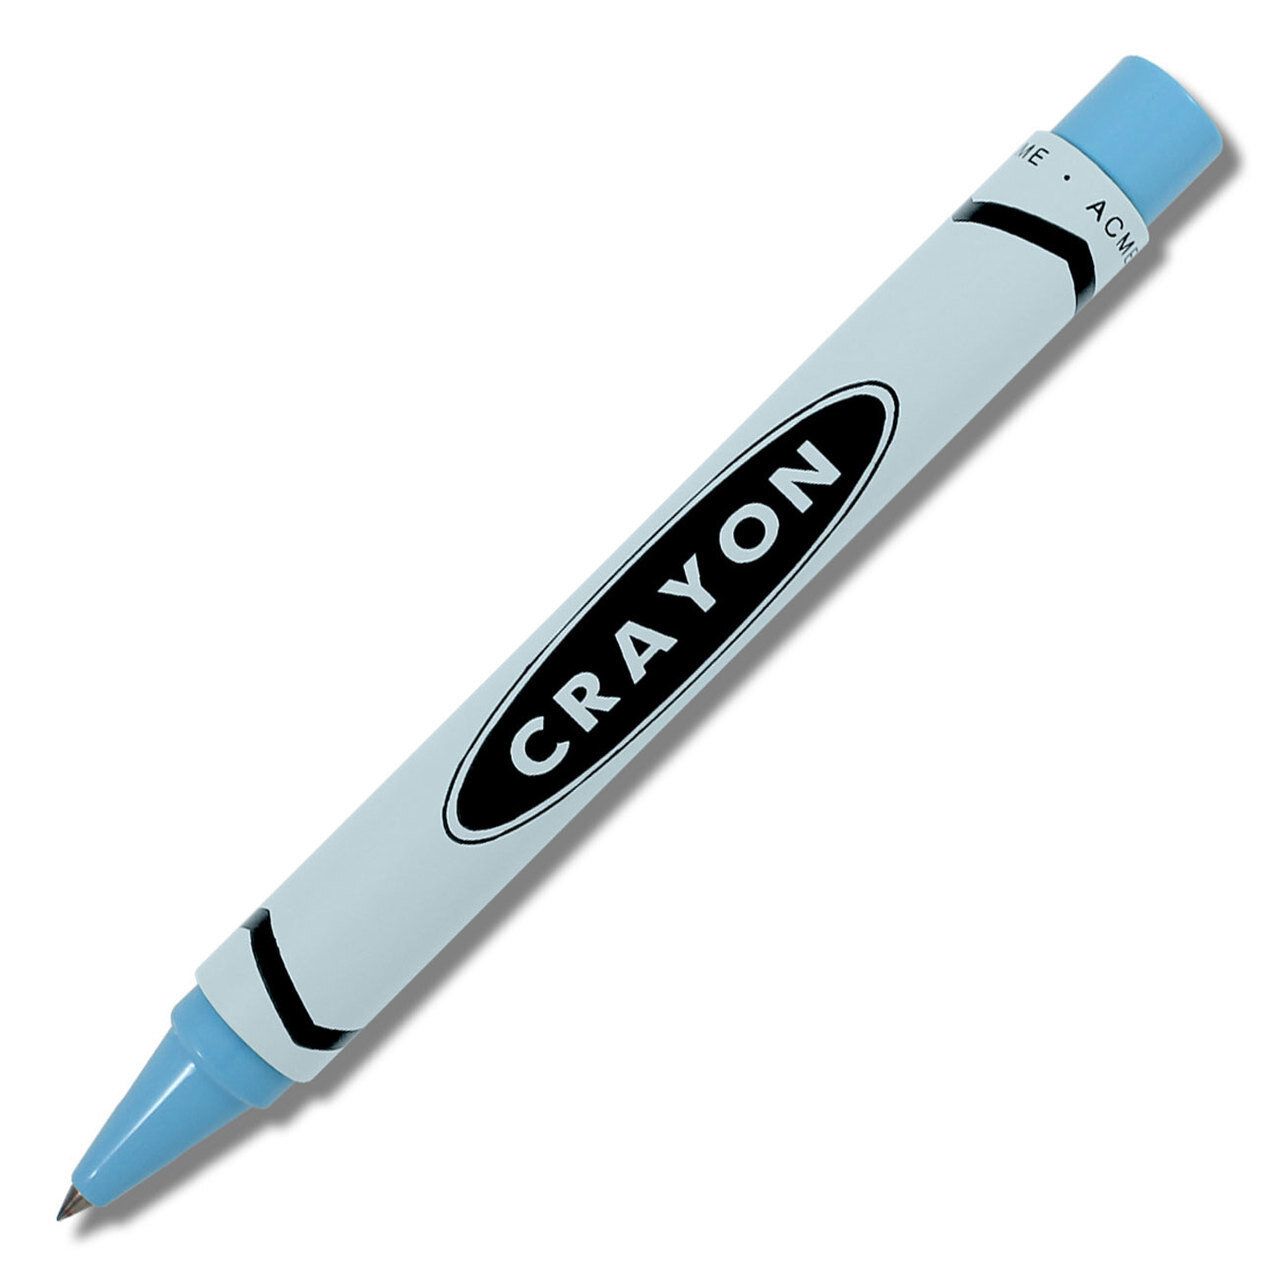 Acme Crayon ? Light Blue Retractable Roller Ball Pen